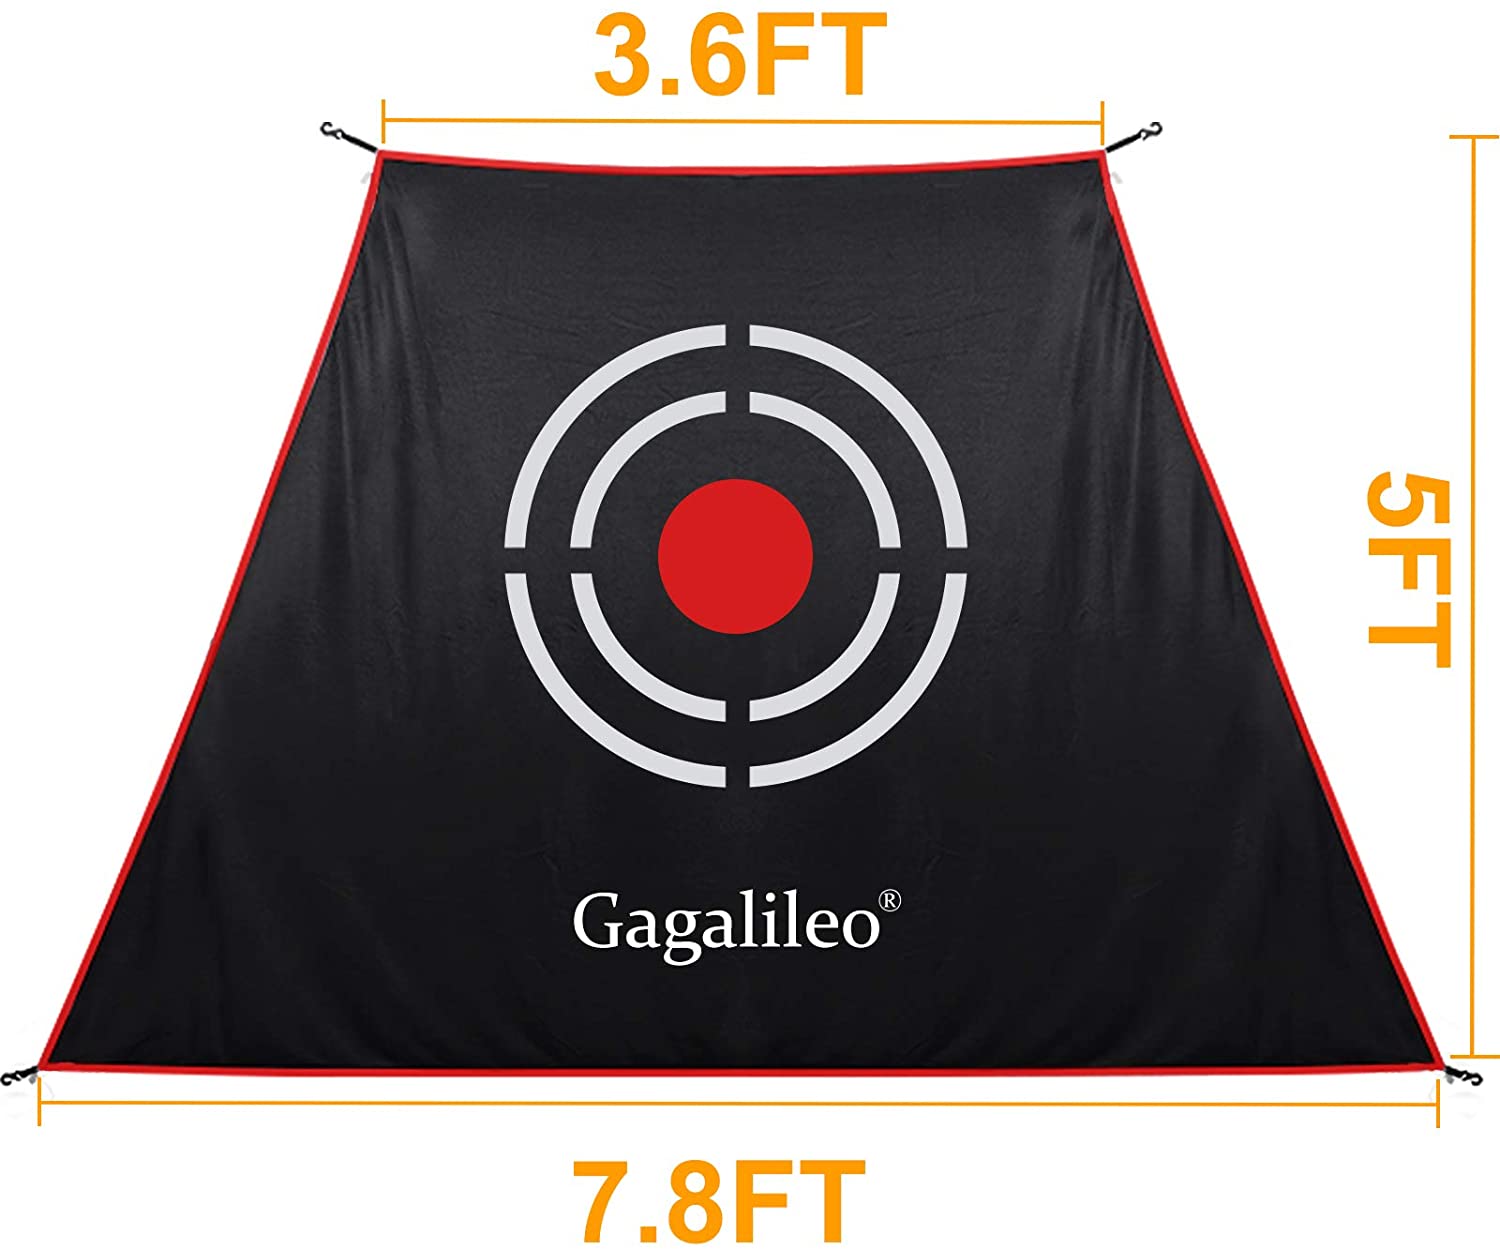 Remplacement de la cible de golf 10X7X6 pour le filet de golf Galileo